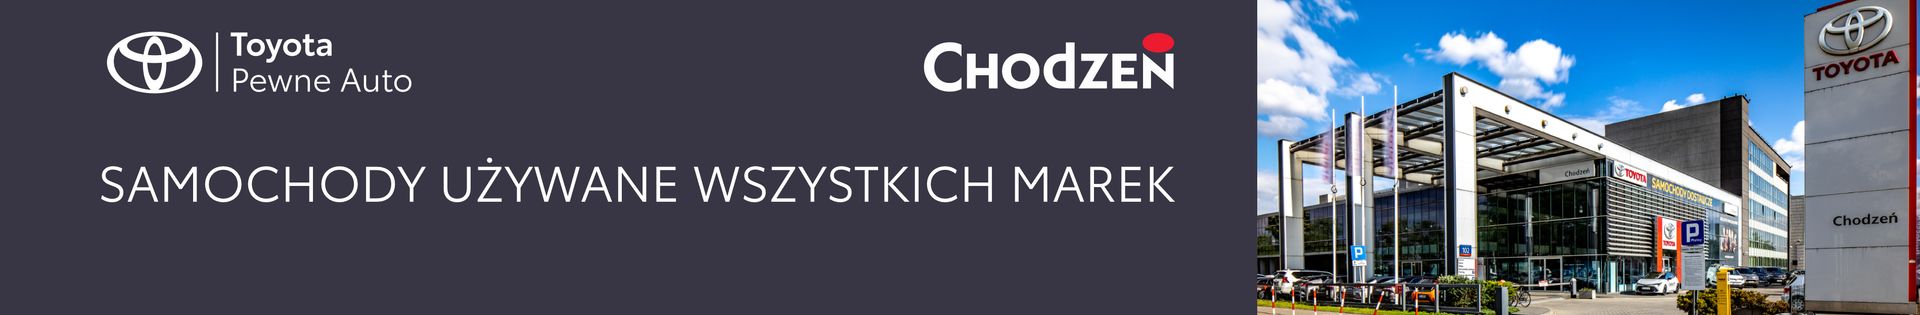 Toyota Chodzeń Warszawa – Samochody Używane z Gwarancją top banner